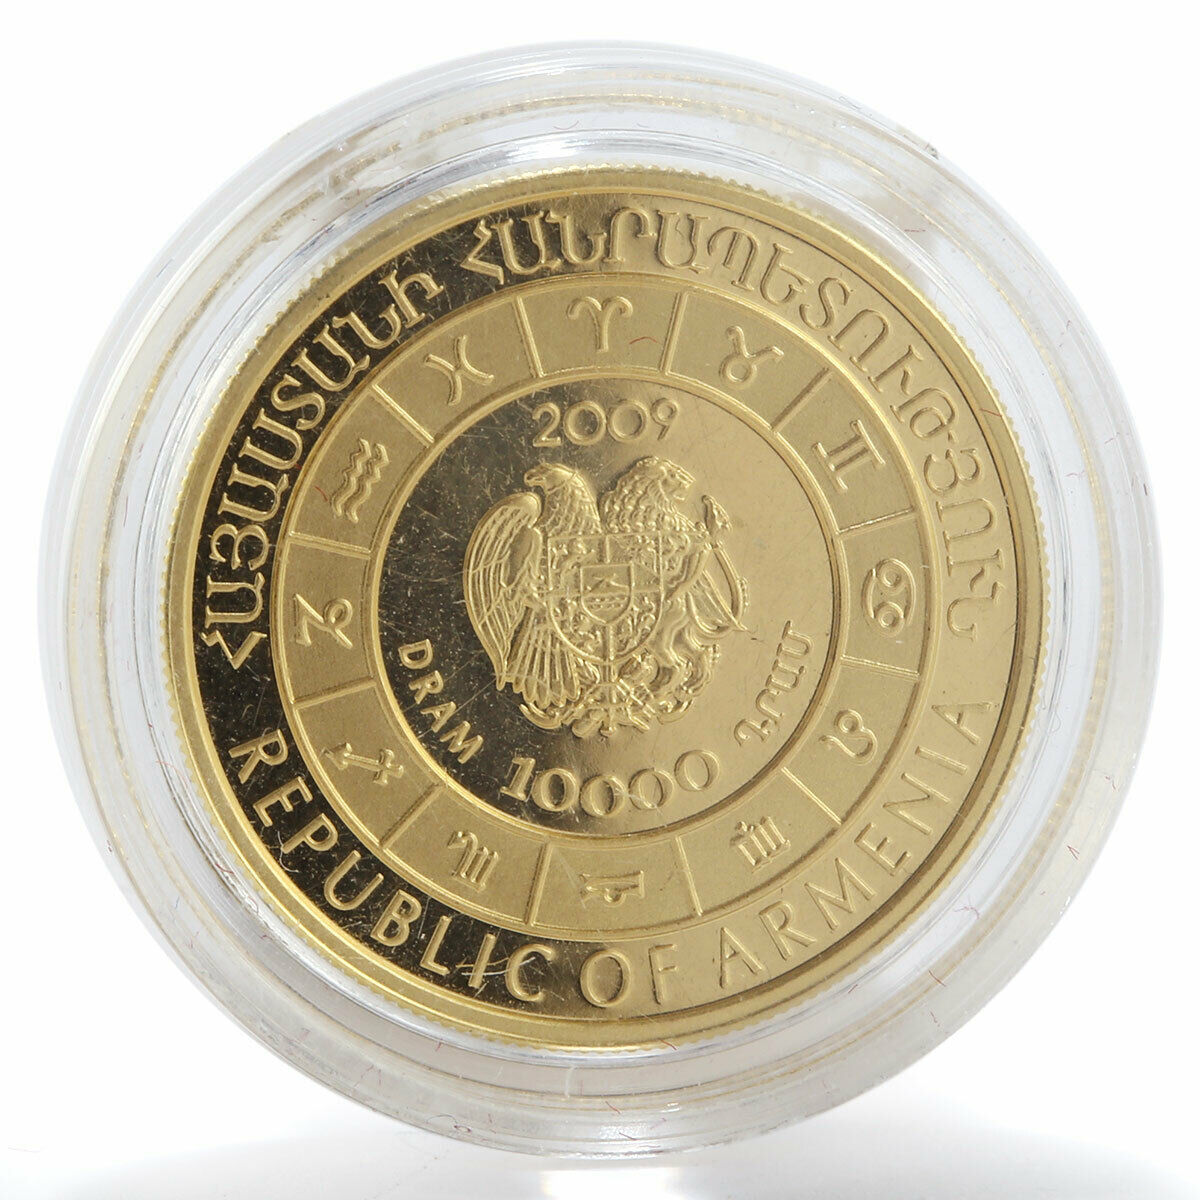 Armenia 10000 dram Zodiac Aries proof gold coin 2009